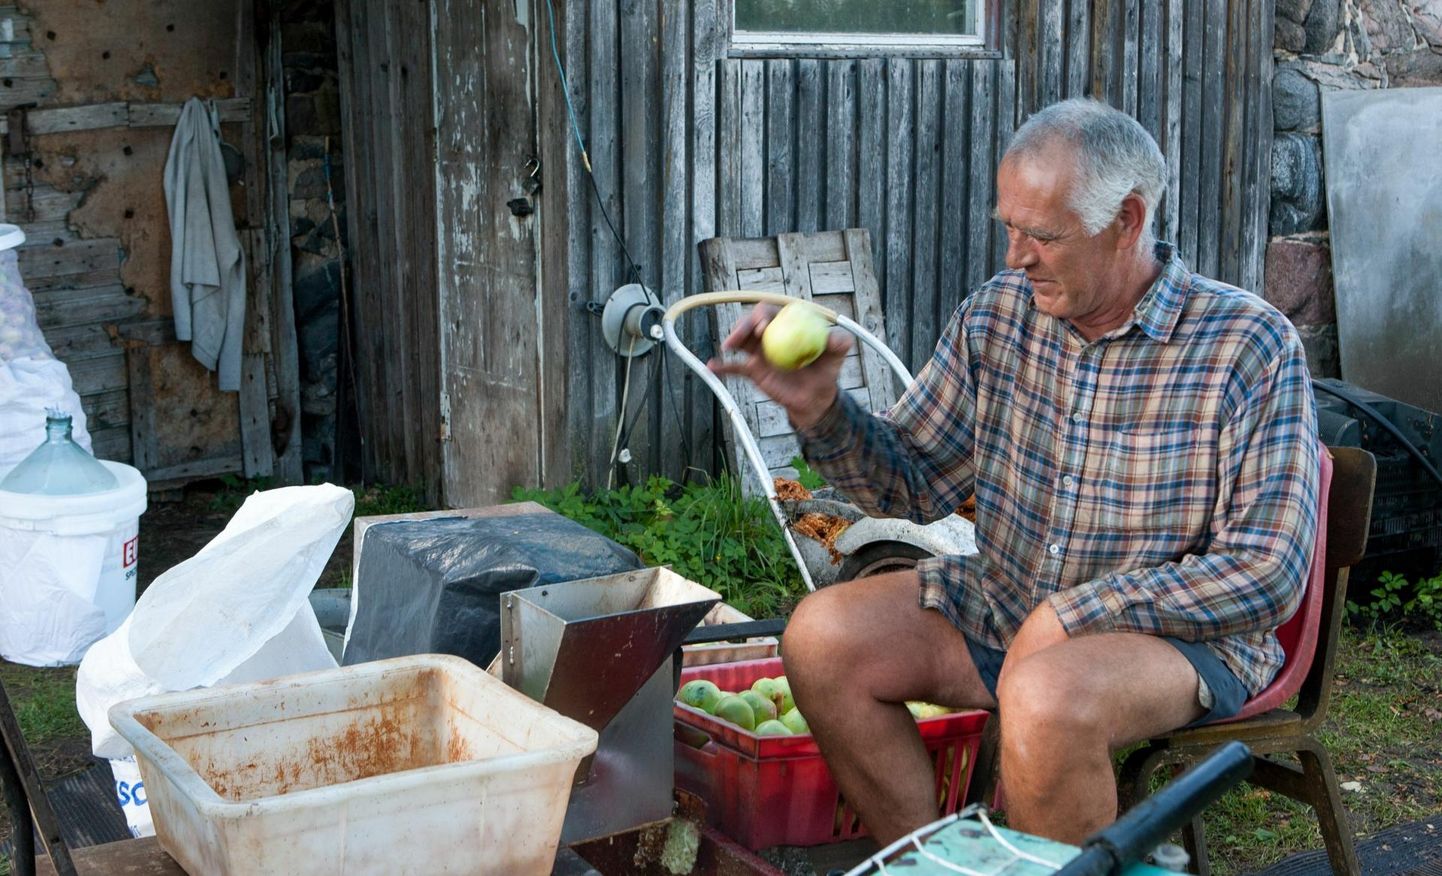 Tuntuks on Lembit Sikk saanud küll ebaõnnestunud messikorraldajana, aga sügisene õunamahla valmistamine ja luudade meisterdamine on tal aastaid hästi välja tulnud ning see on ka teenistust toonud.